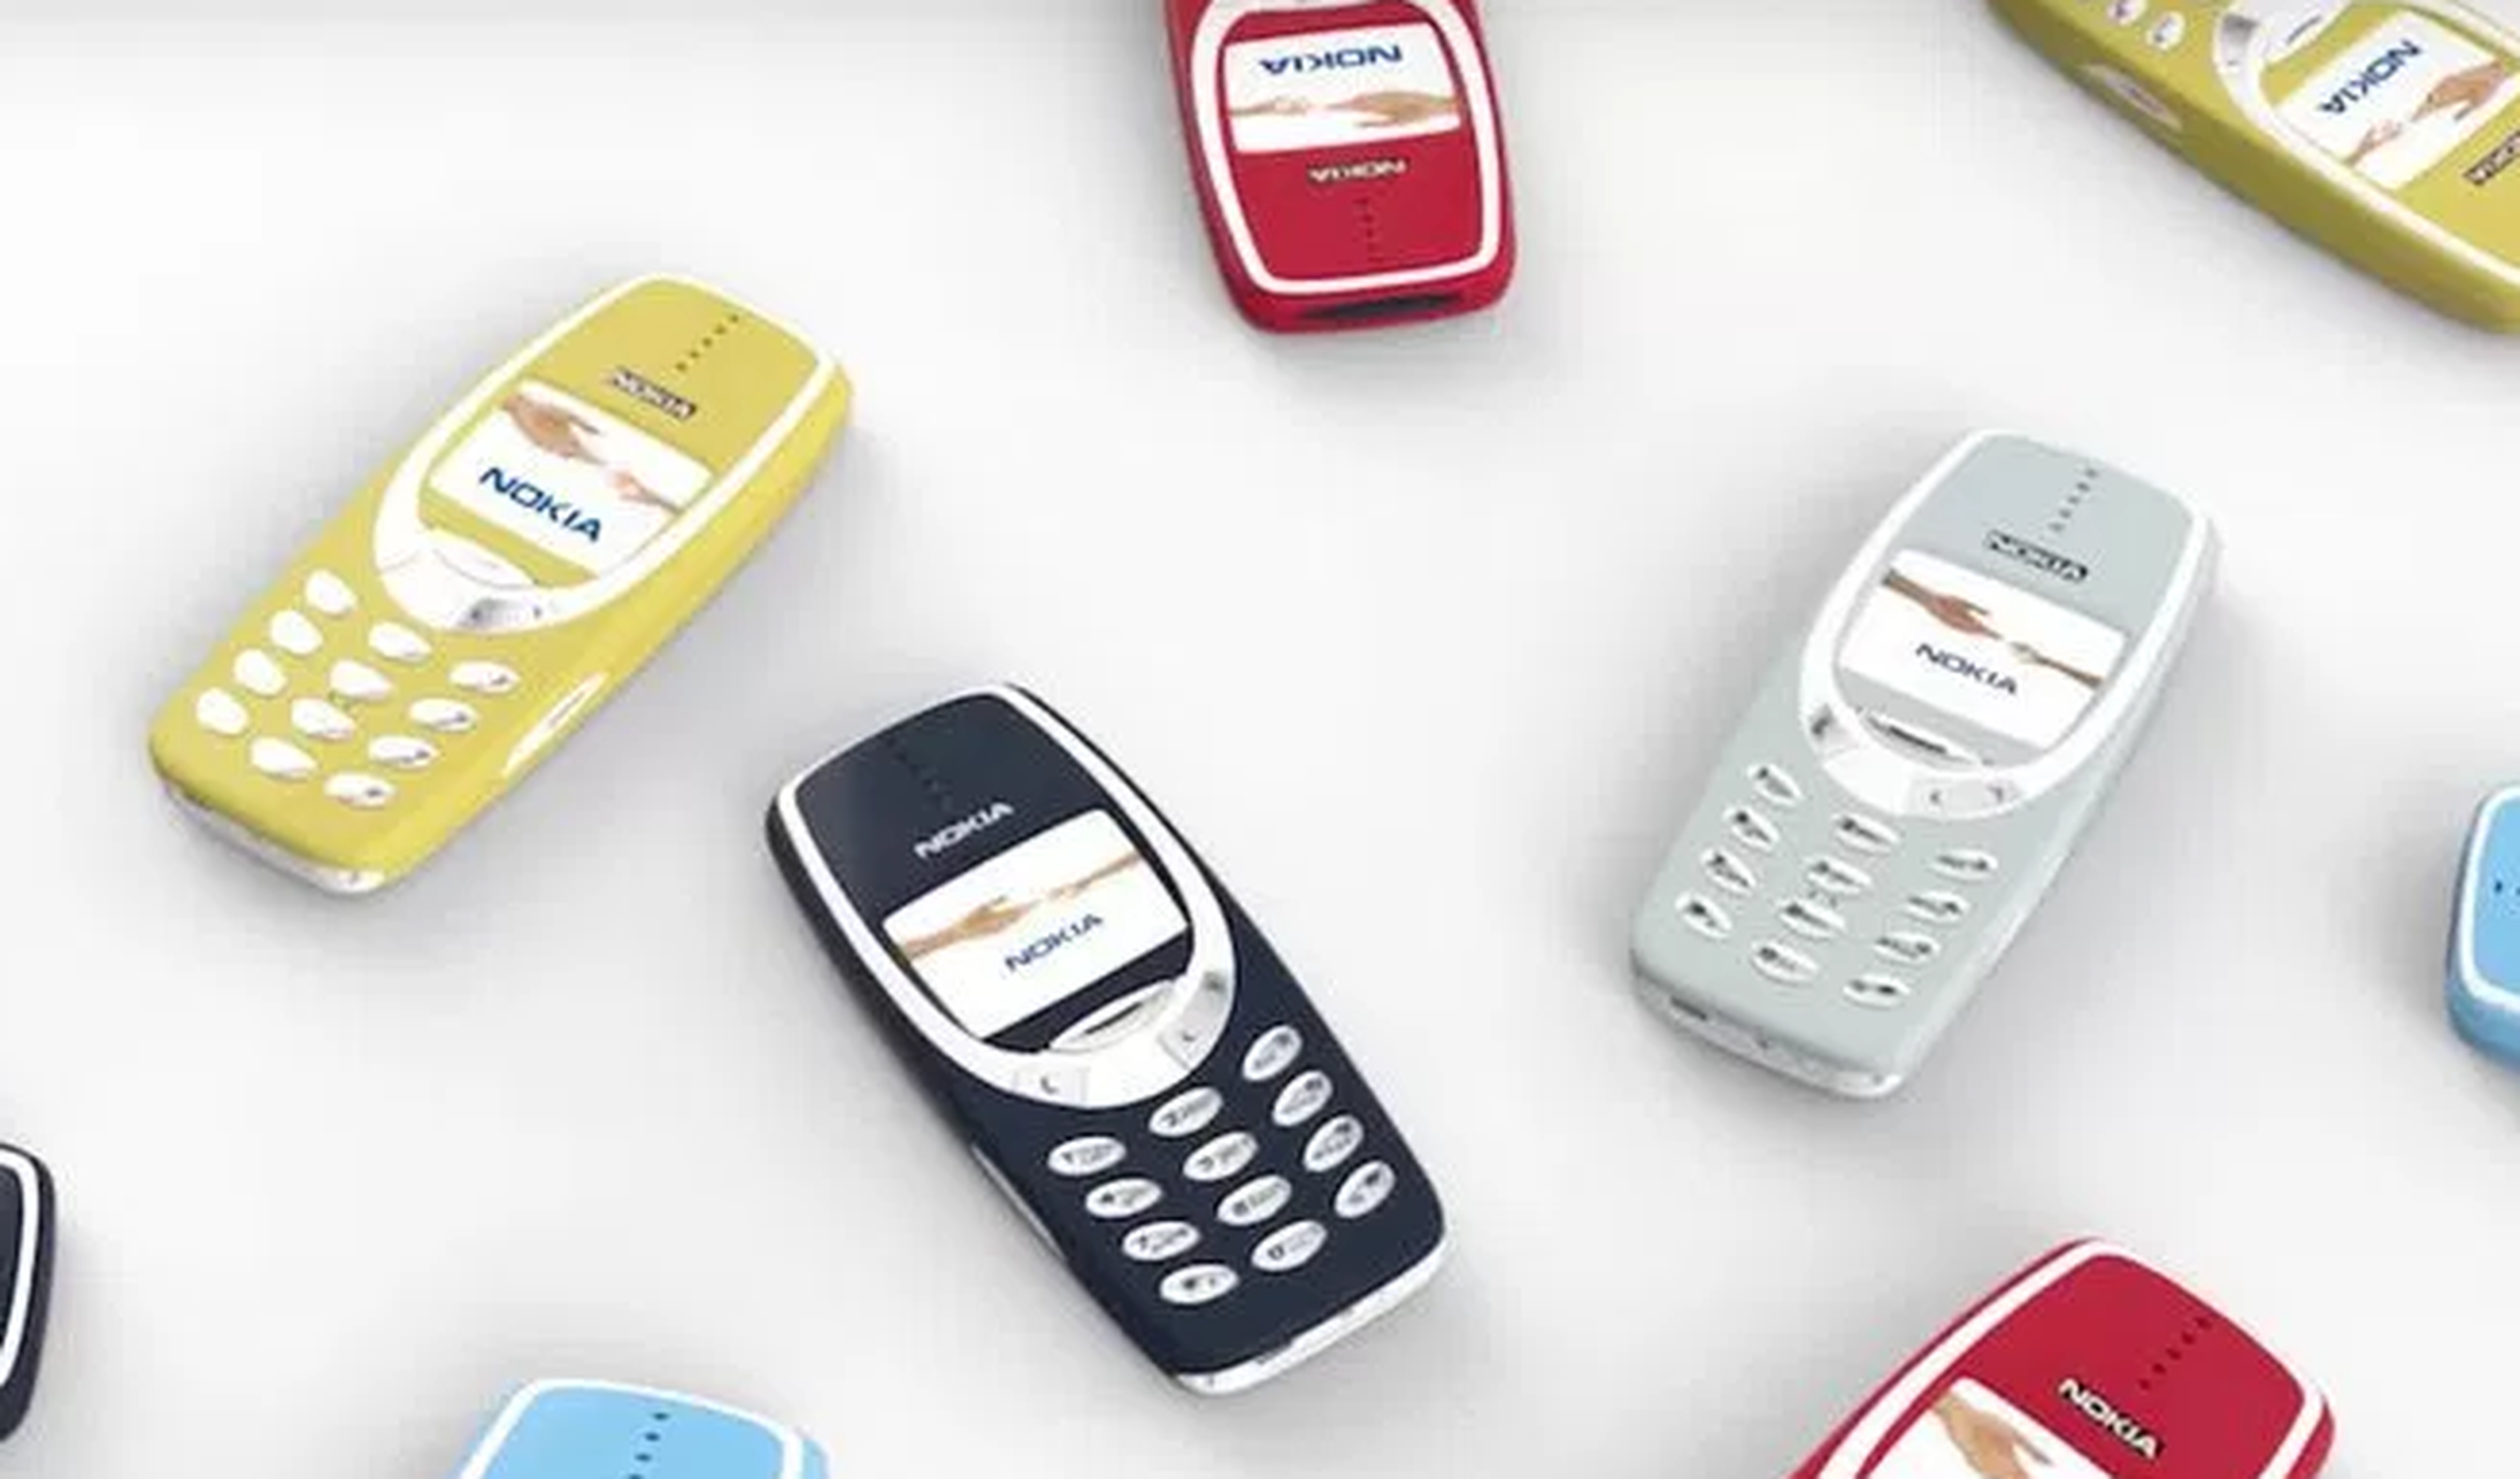 Lo último sobre el Nokia 3310: pantalla a color y diseño personalizable |  Computer Hoy